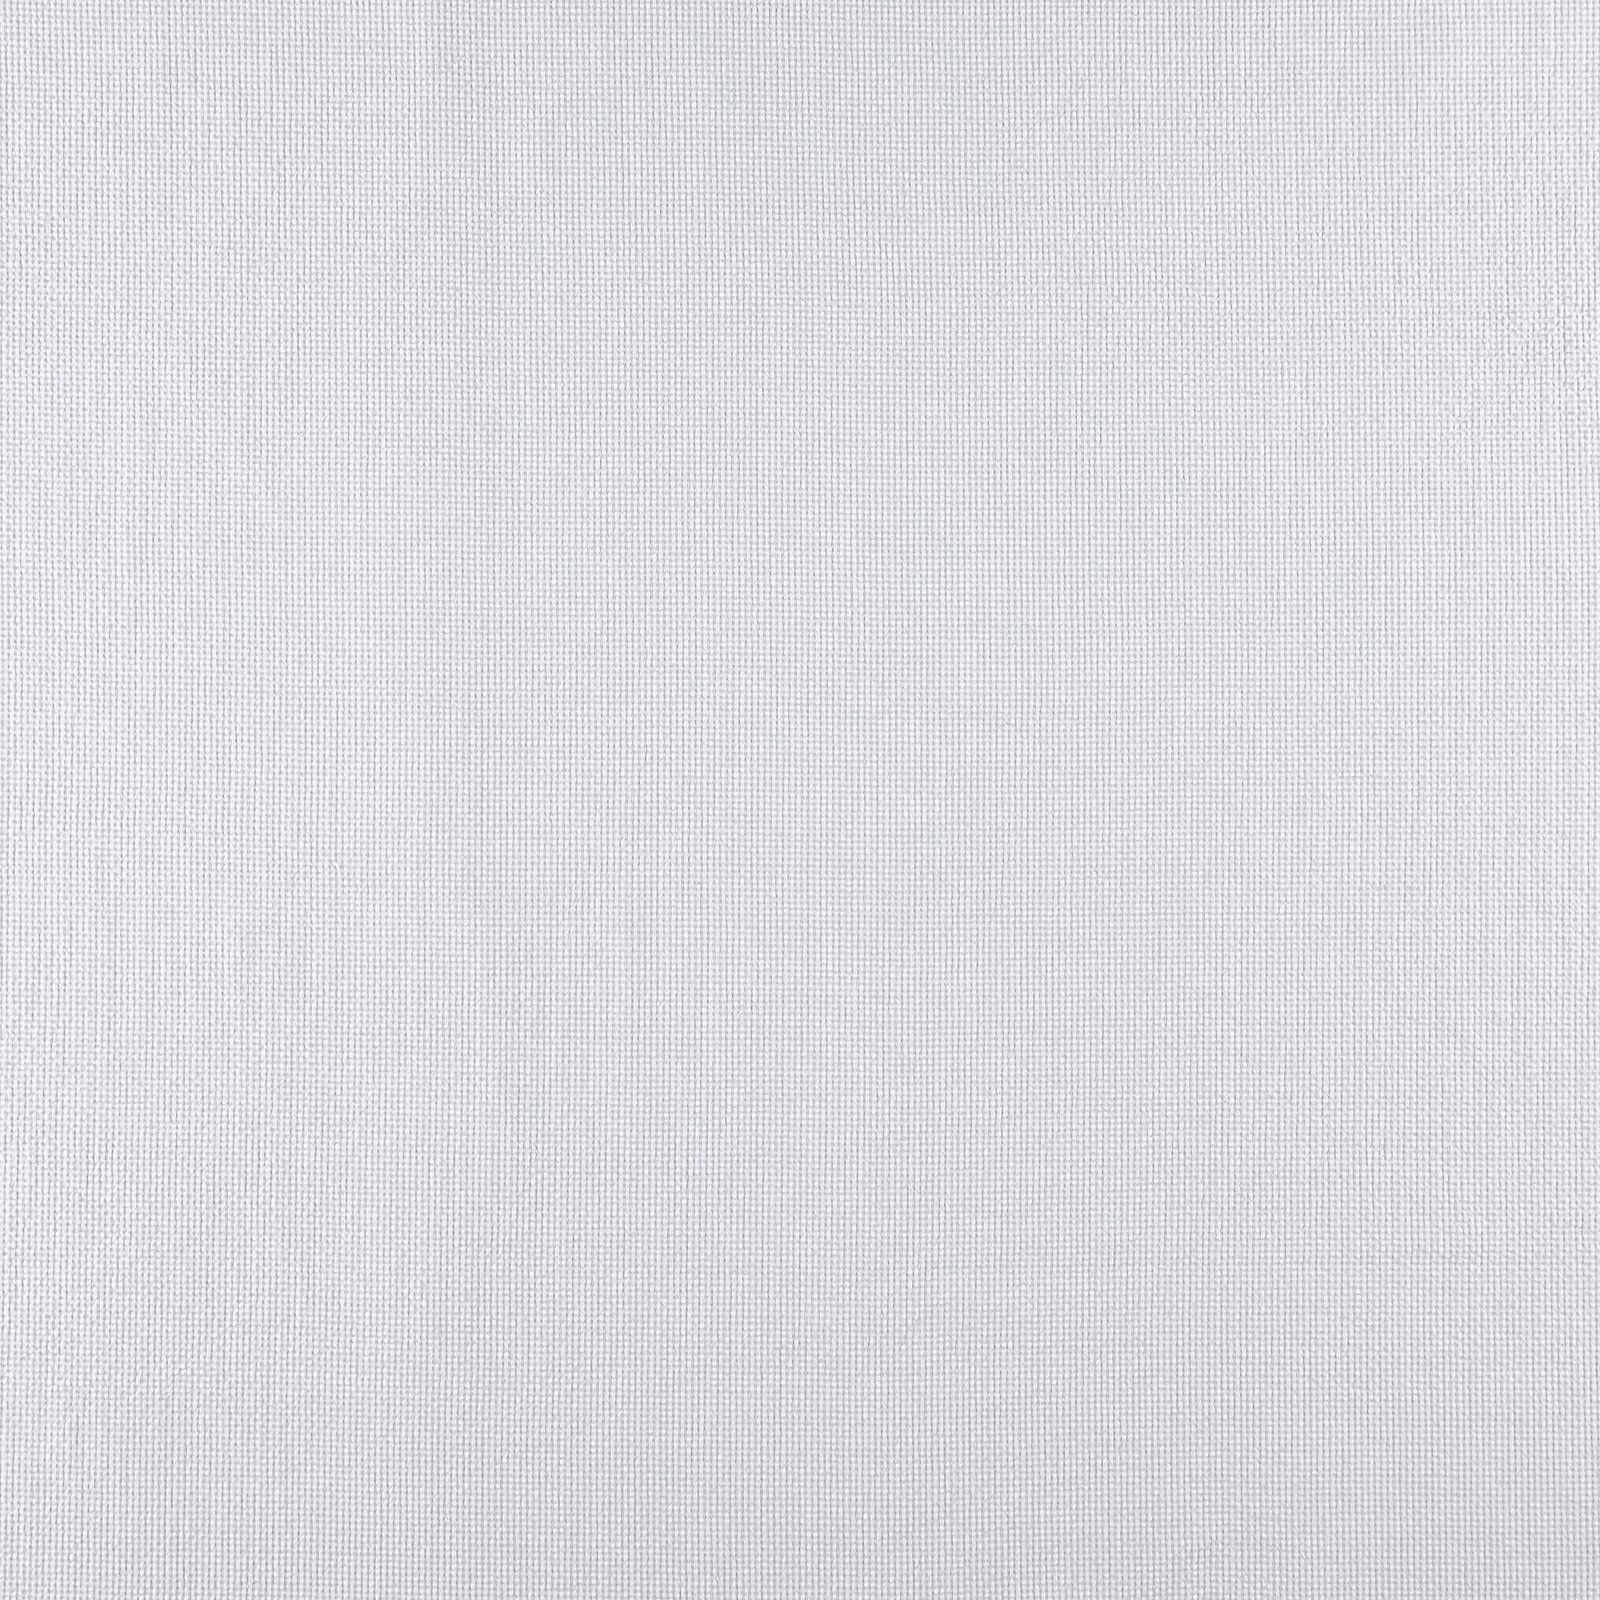 Bæk & bælge lys grå garnfarvet tern 510917_pack_sp